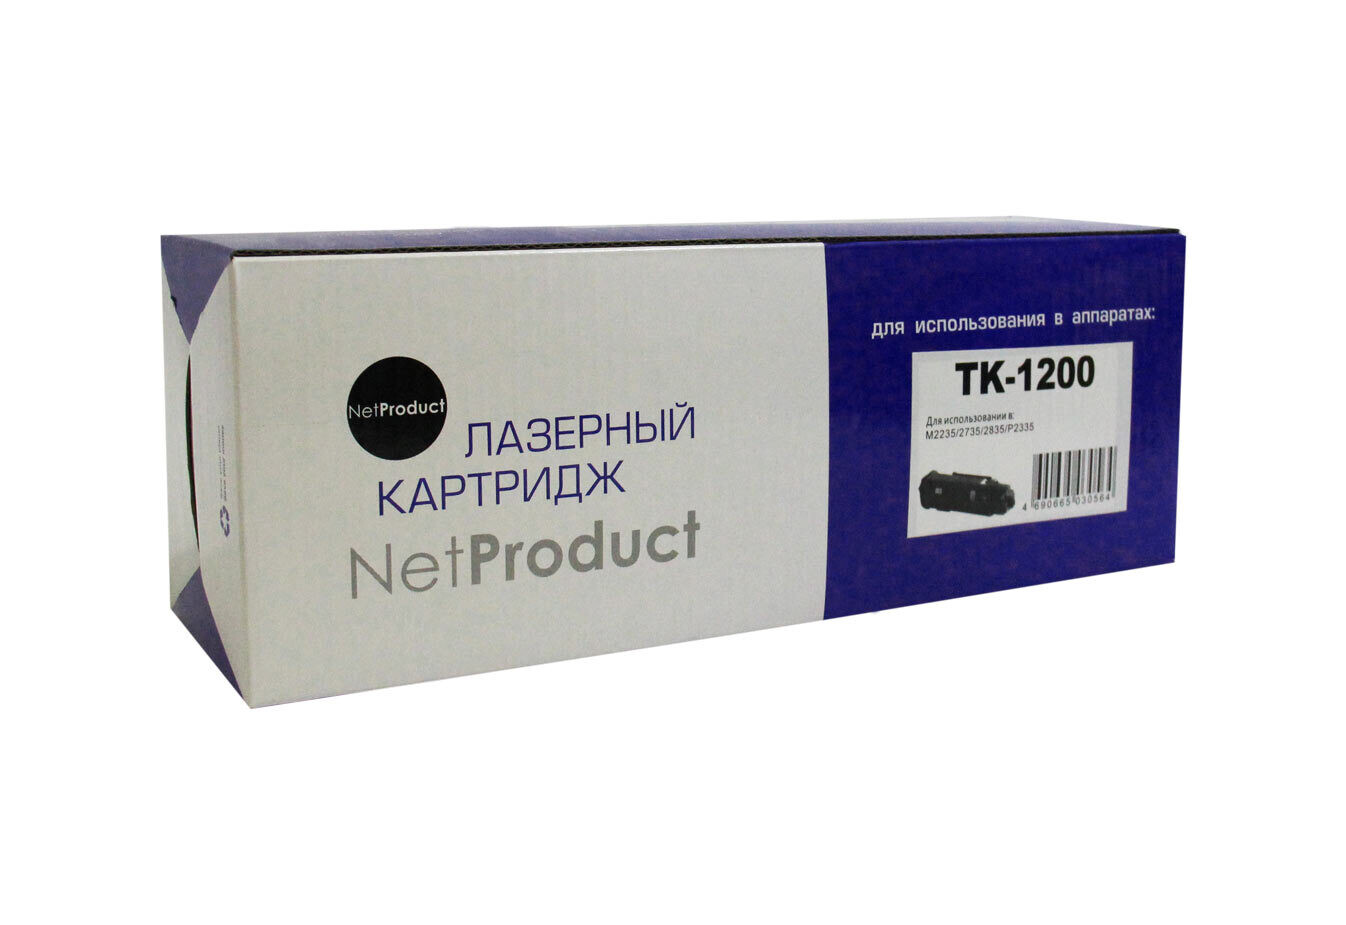 Картридж TK-1200 для Kyocera M2235/2735/2835/P2335, 3K, NetProduc с чипом.